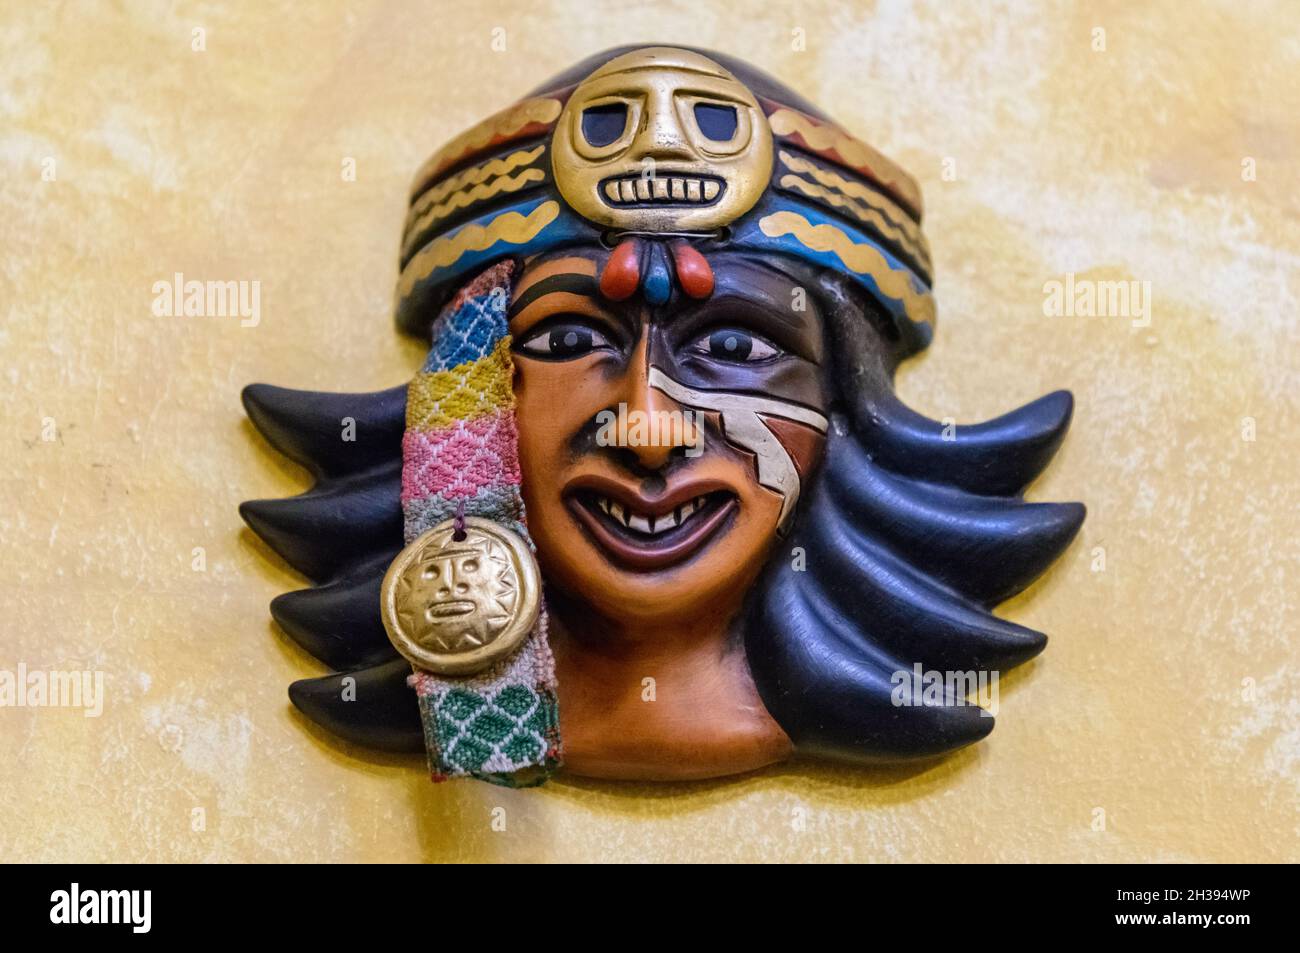 Le masque artistique d'une femme inca décore le mur.Cuzco, Pérou. Banque D'Images